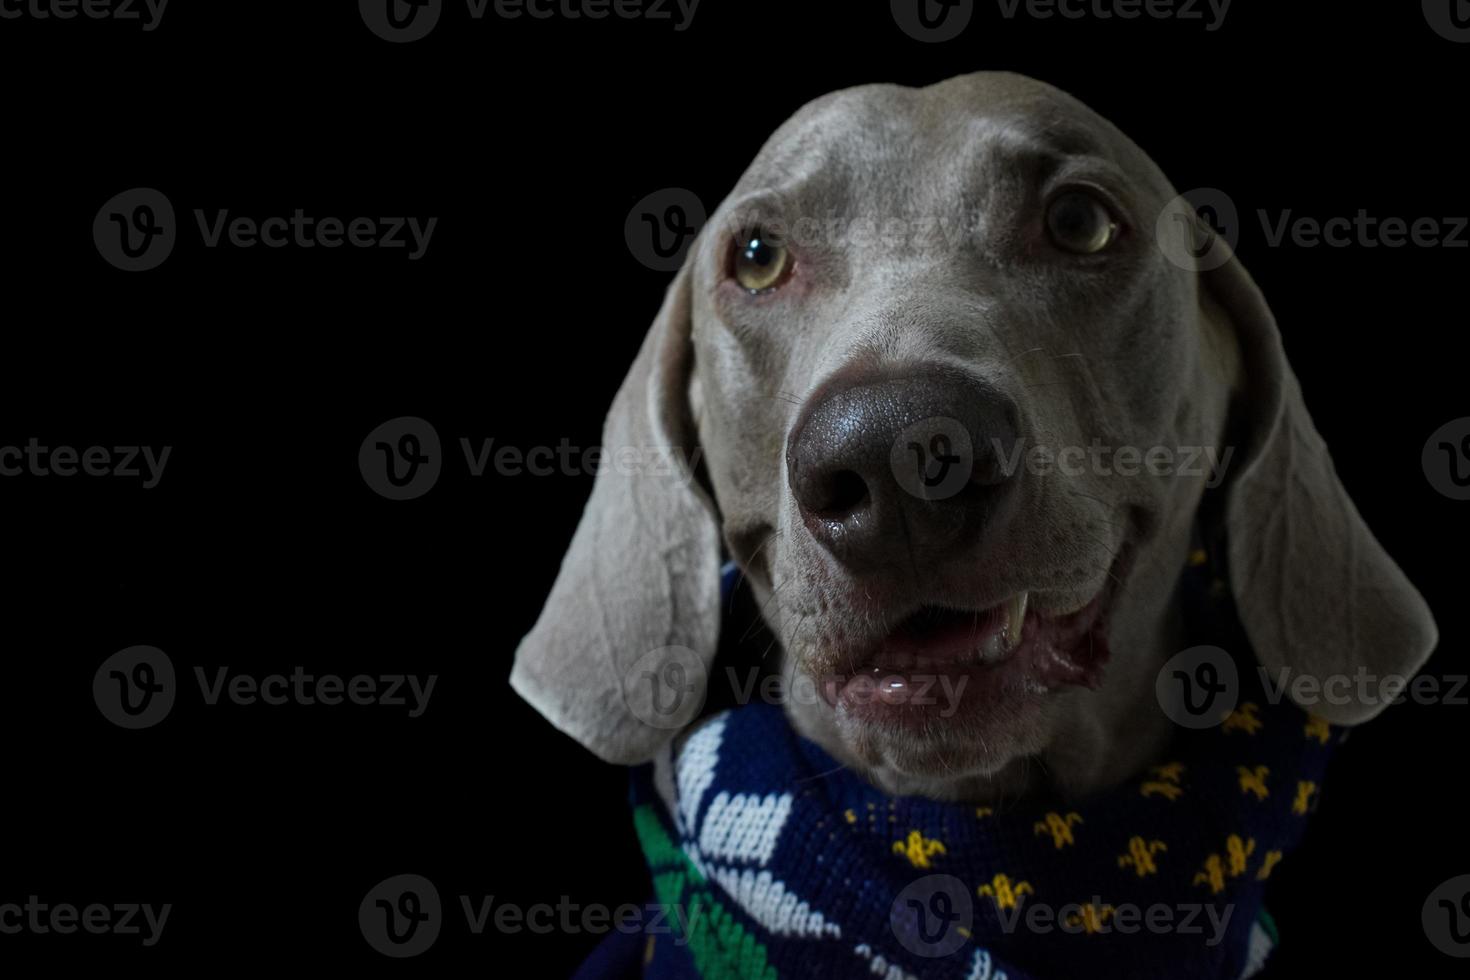 close-up retrato de cachorro weimaraner foto